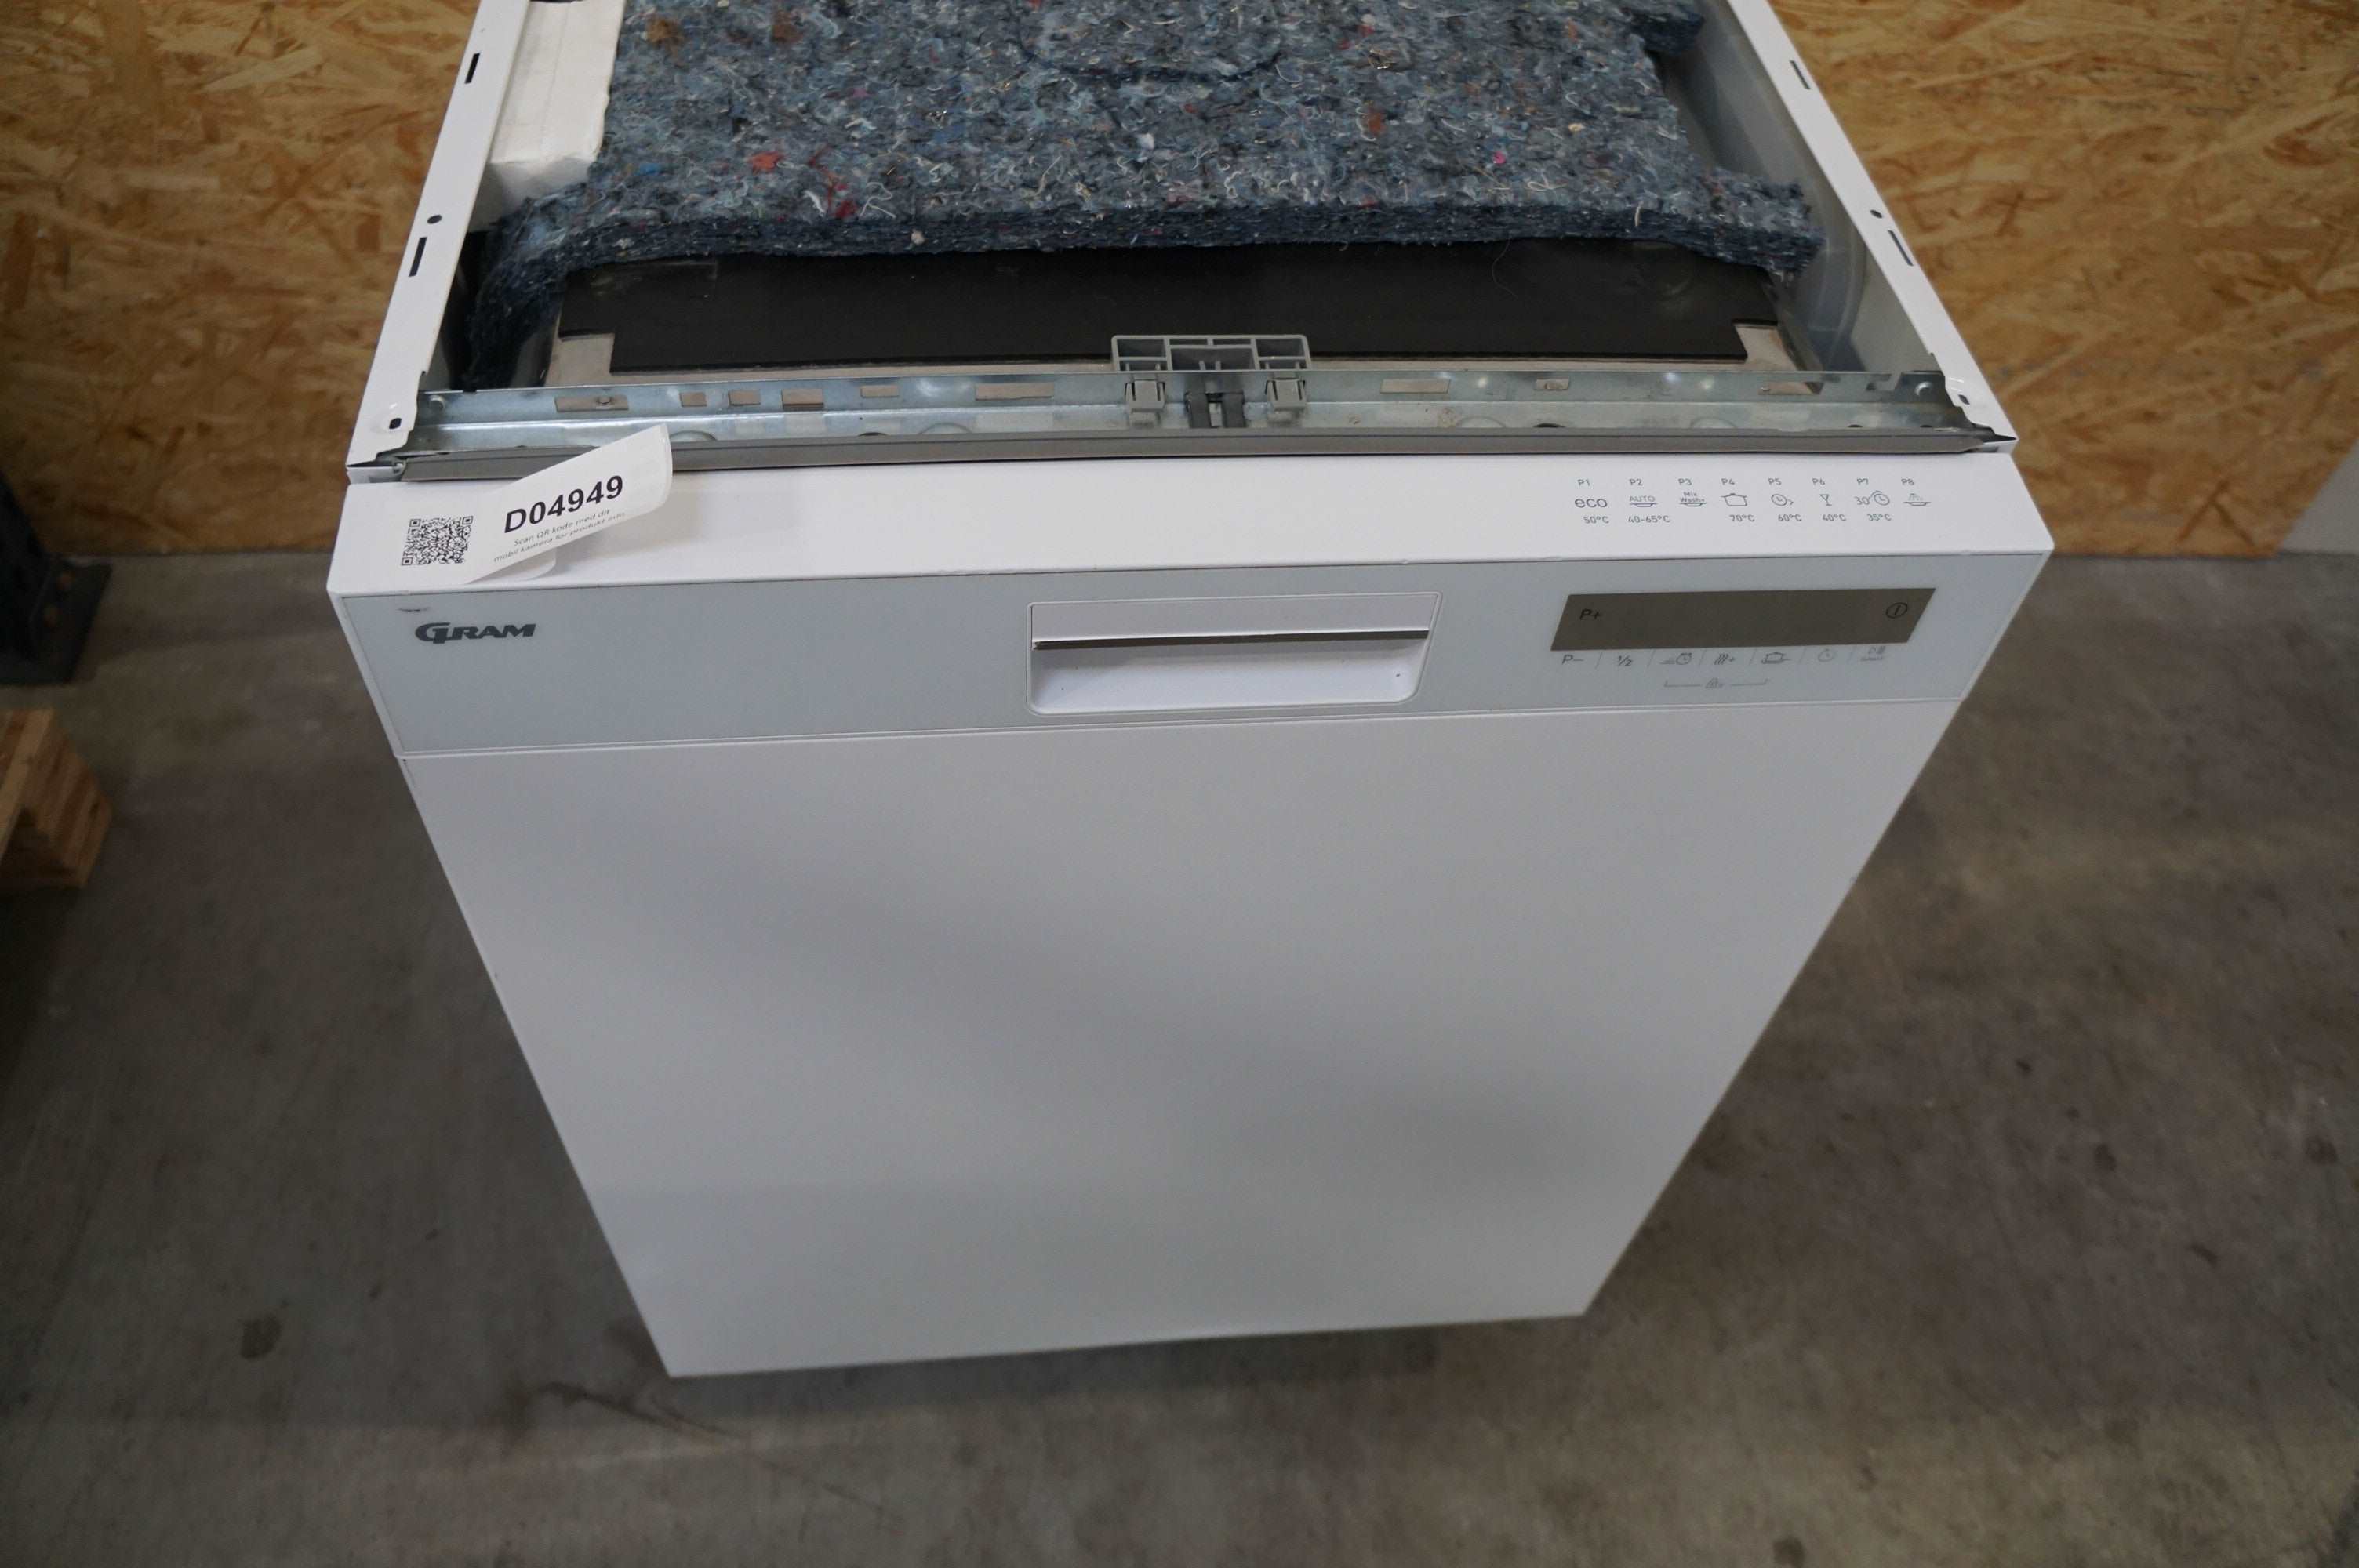 Gram opvaskemaskine OM62-39T/1